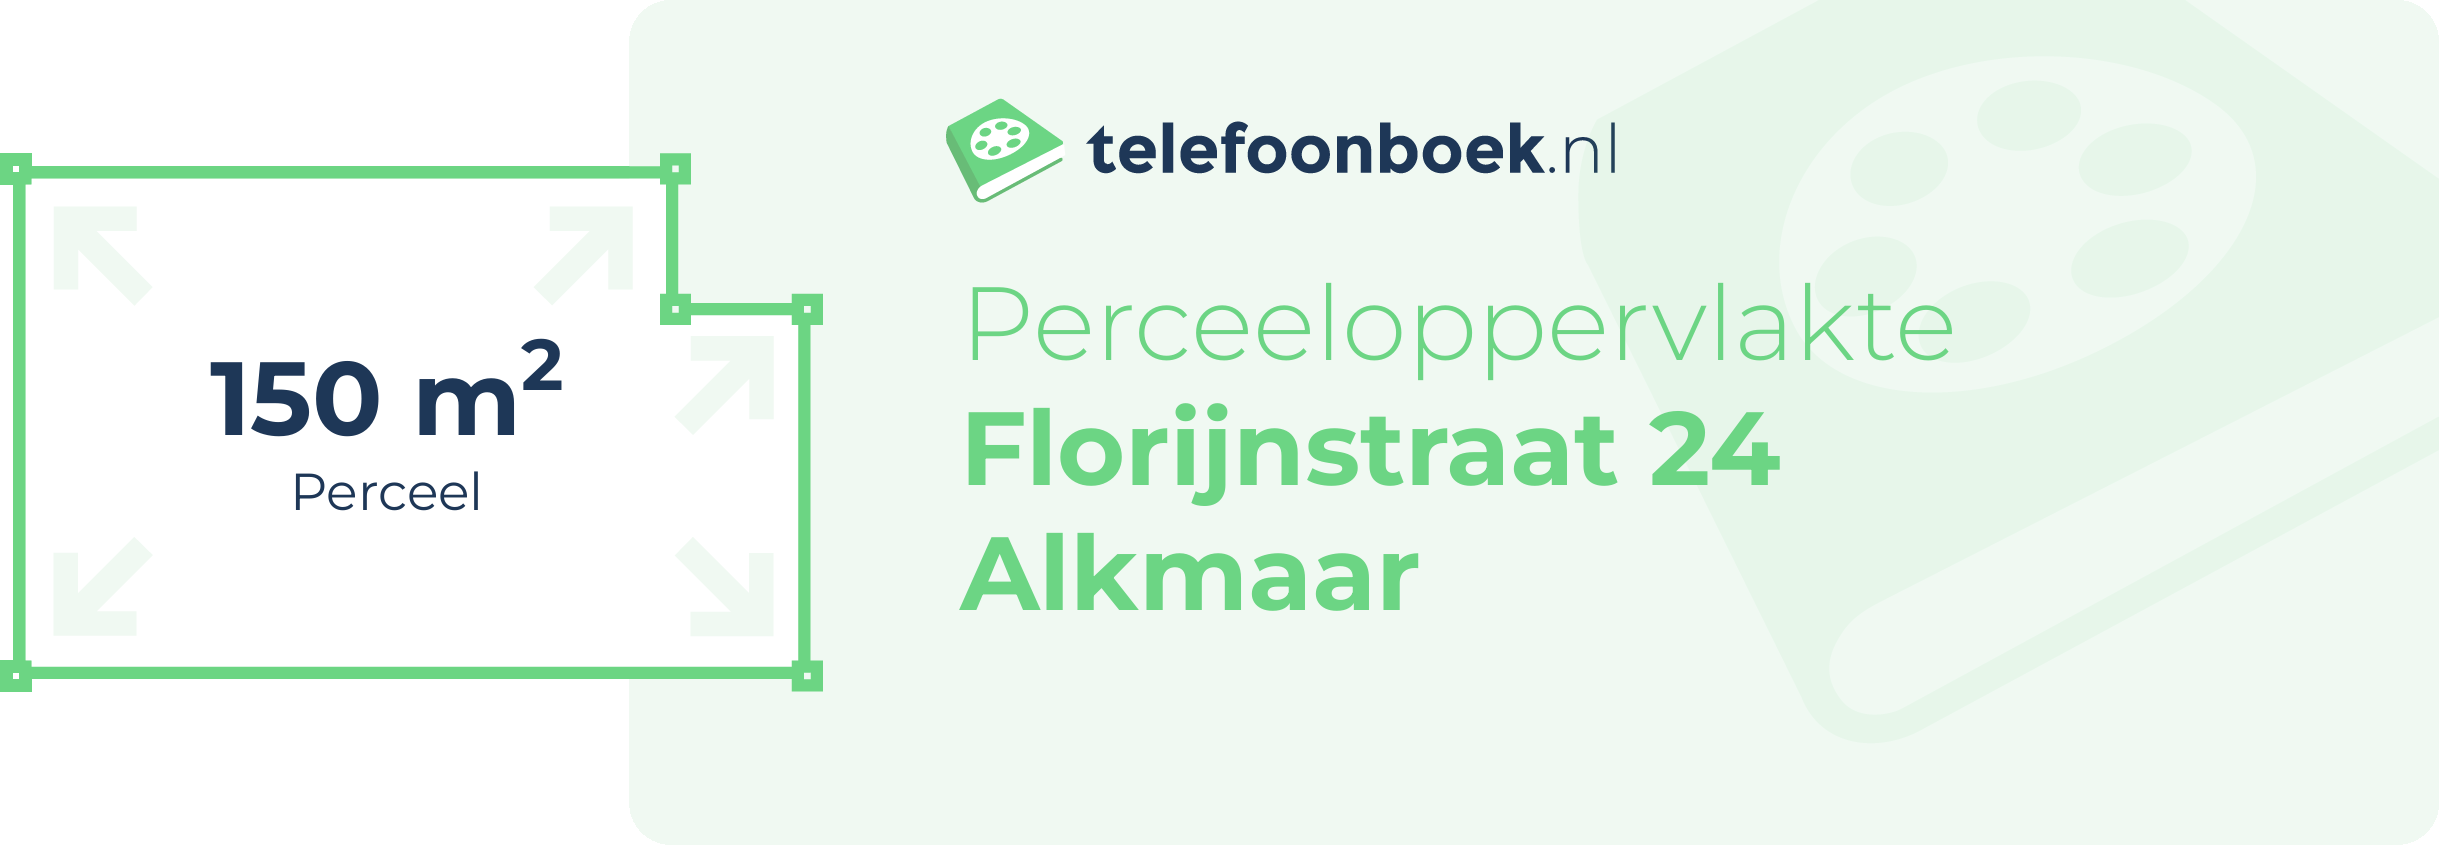 Perceeloppervlakte Florijnstraat 24 Alkmaar